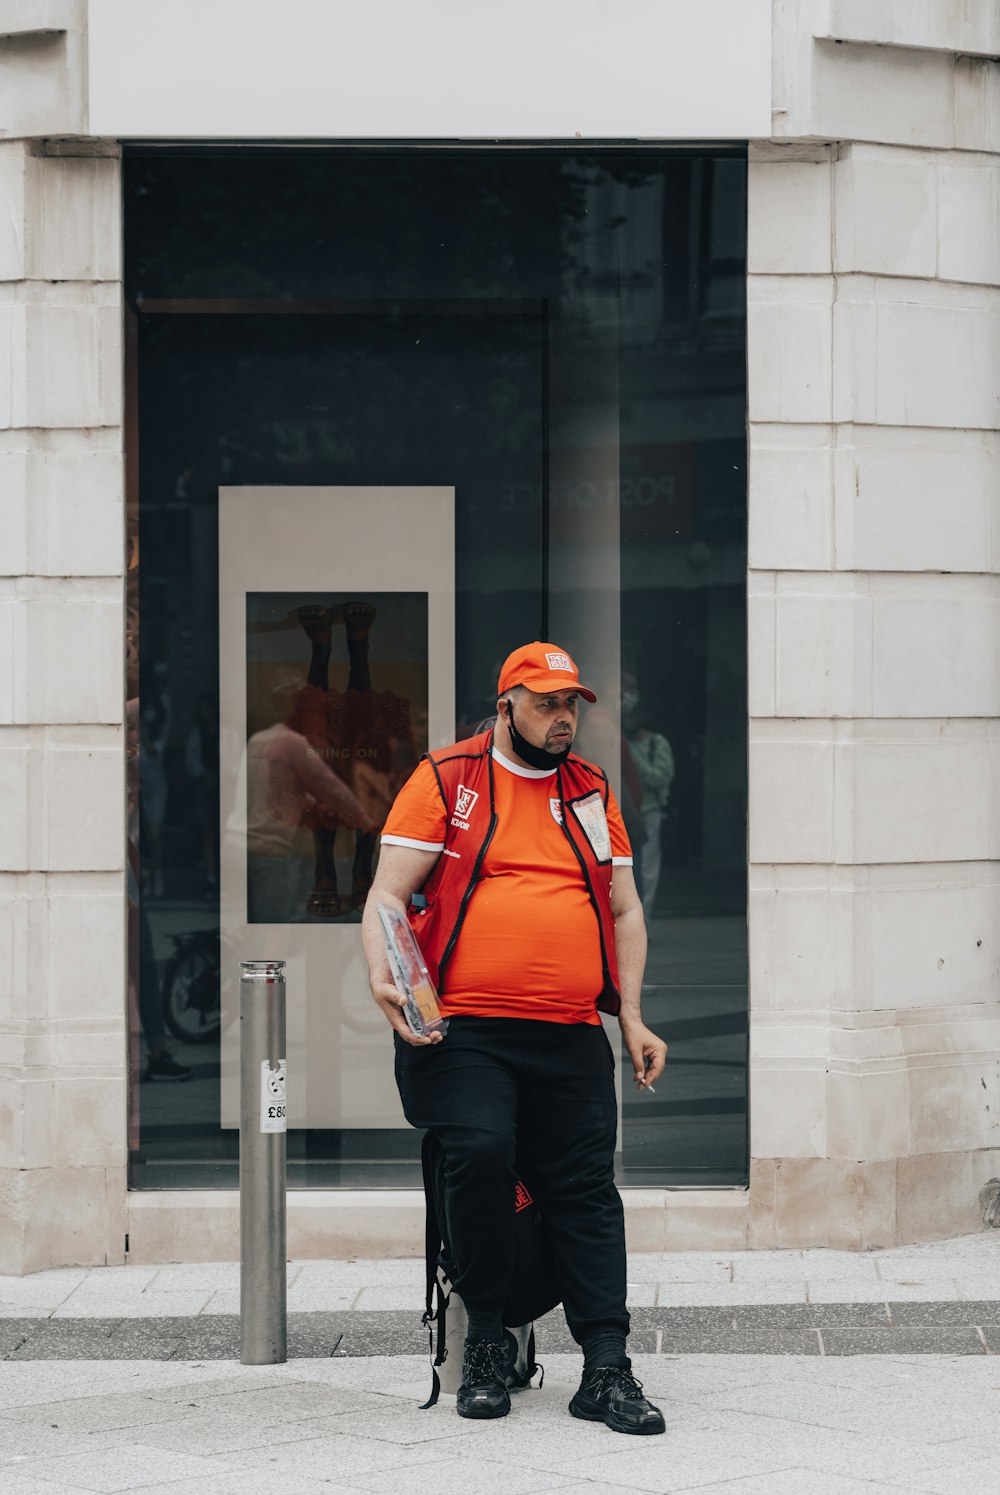 주황색 조끼를 입은 남자가 거리를 걷고 있다